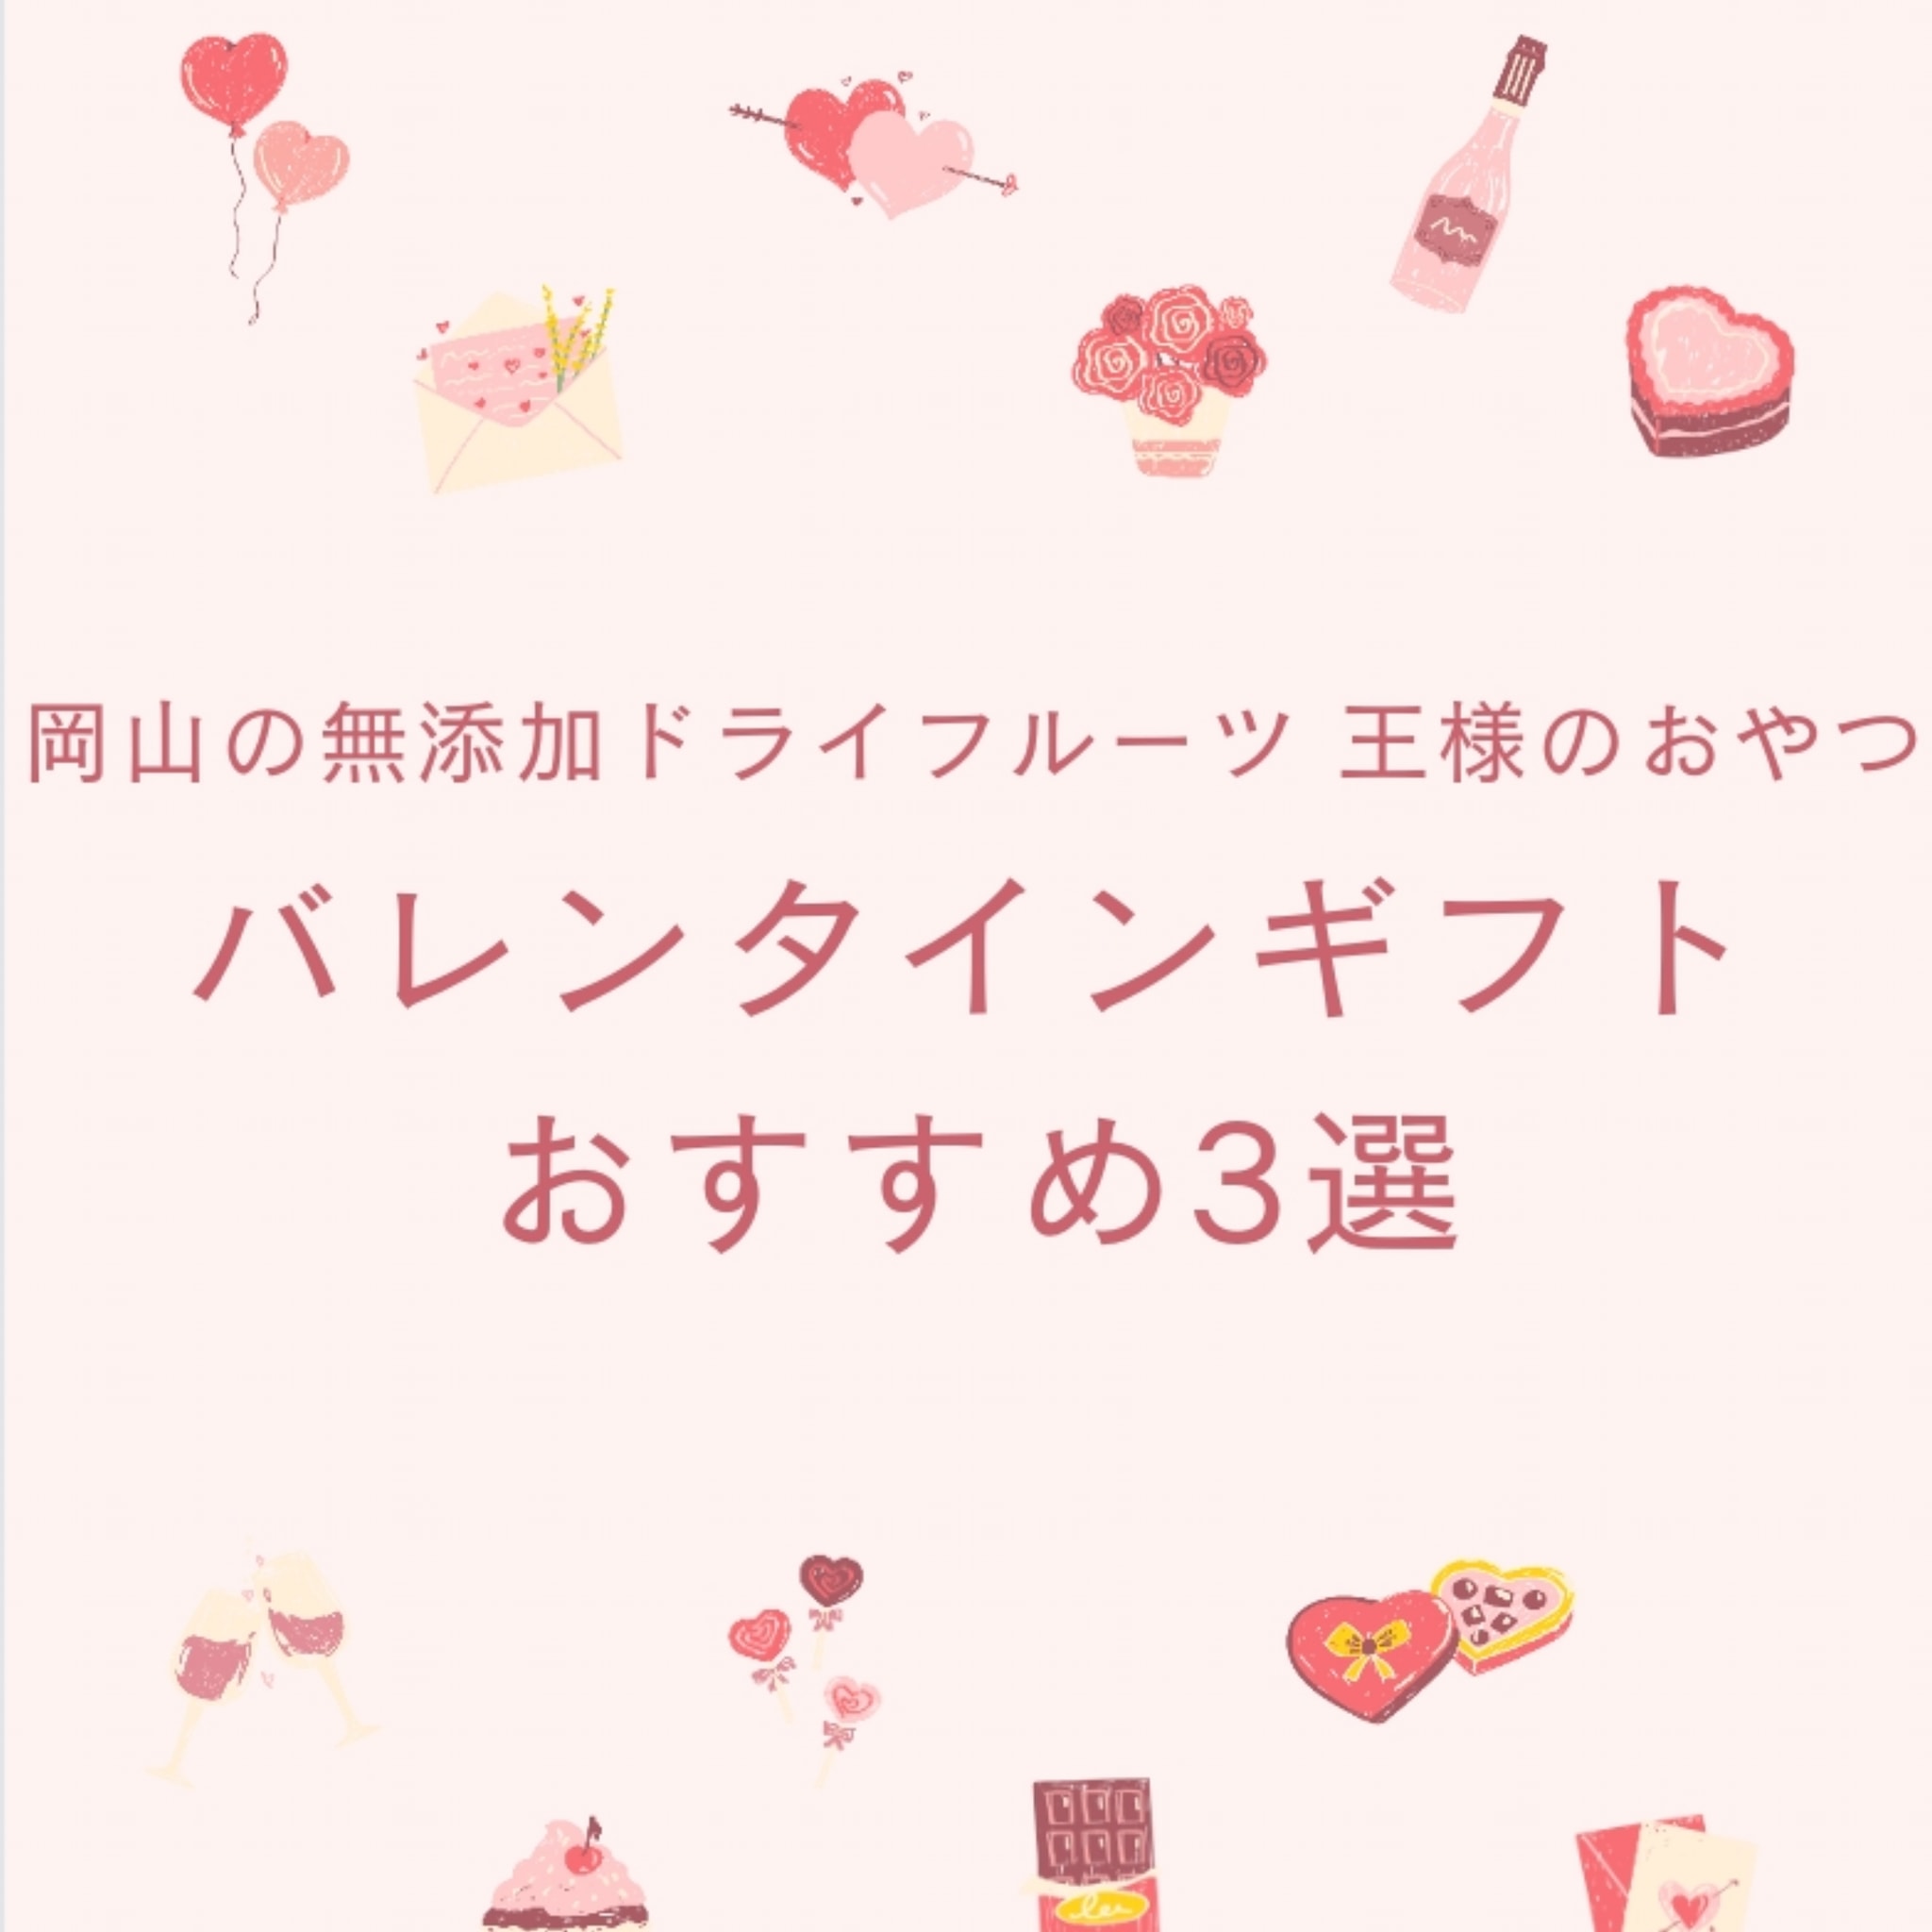 【2/14まで】バレンタインギフトおすすめ3選 / JR東京駅「グランスタ東京」内 出店について